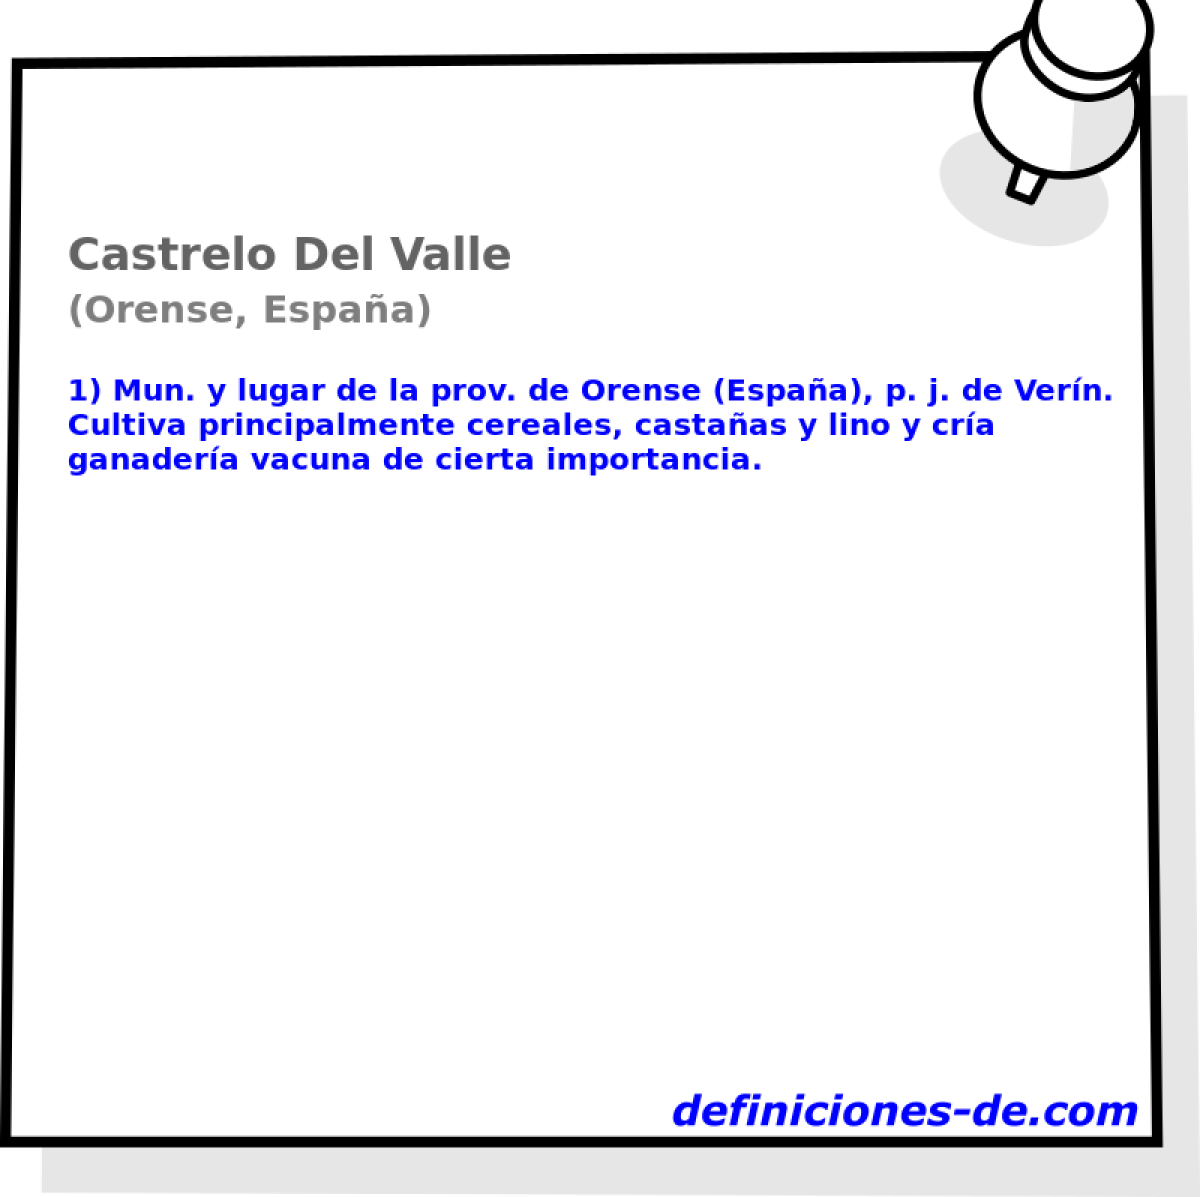 Castrelo Del Valle (Orense, Espaa)